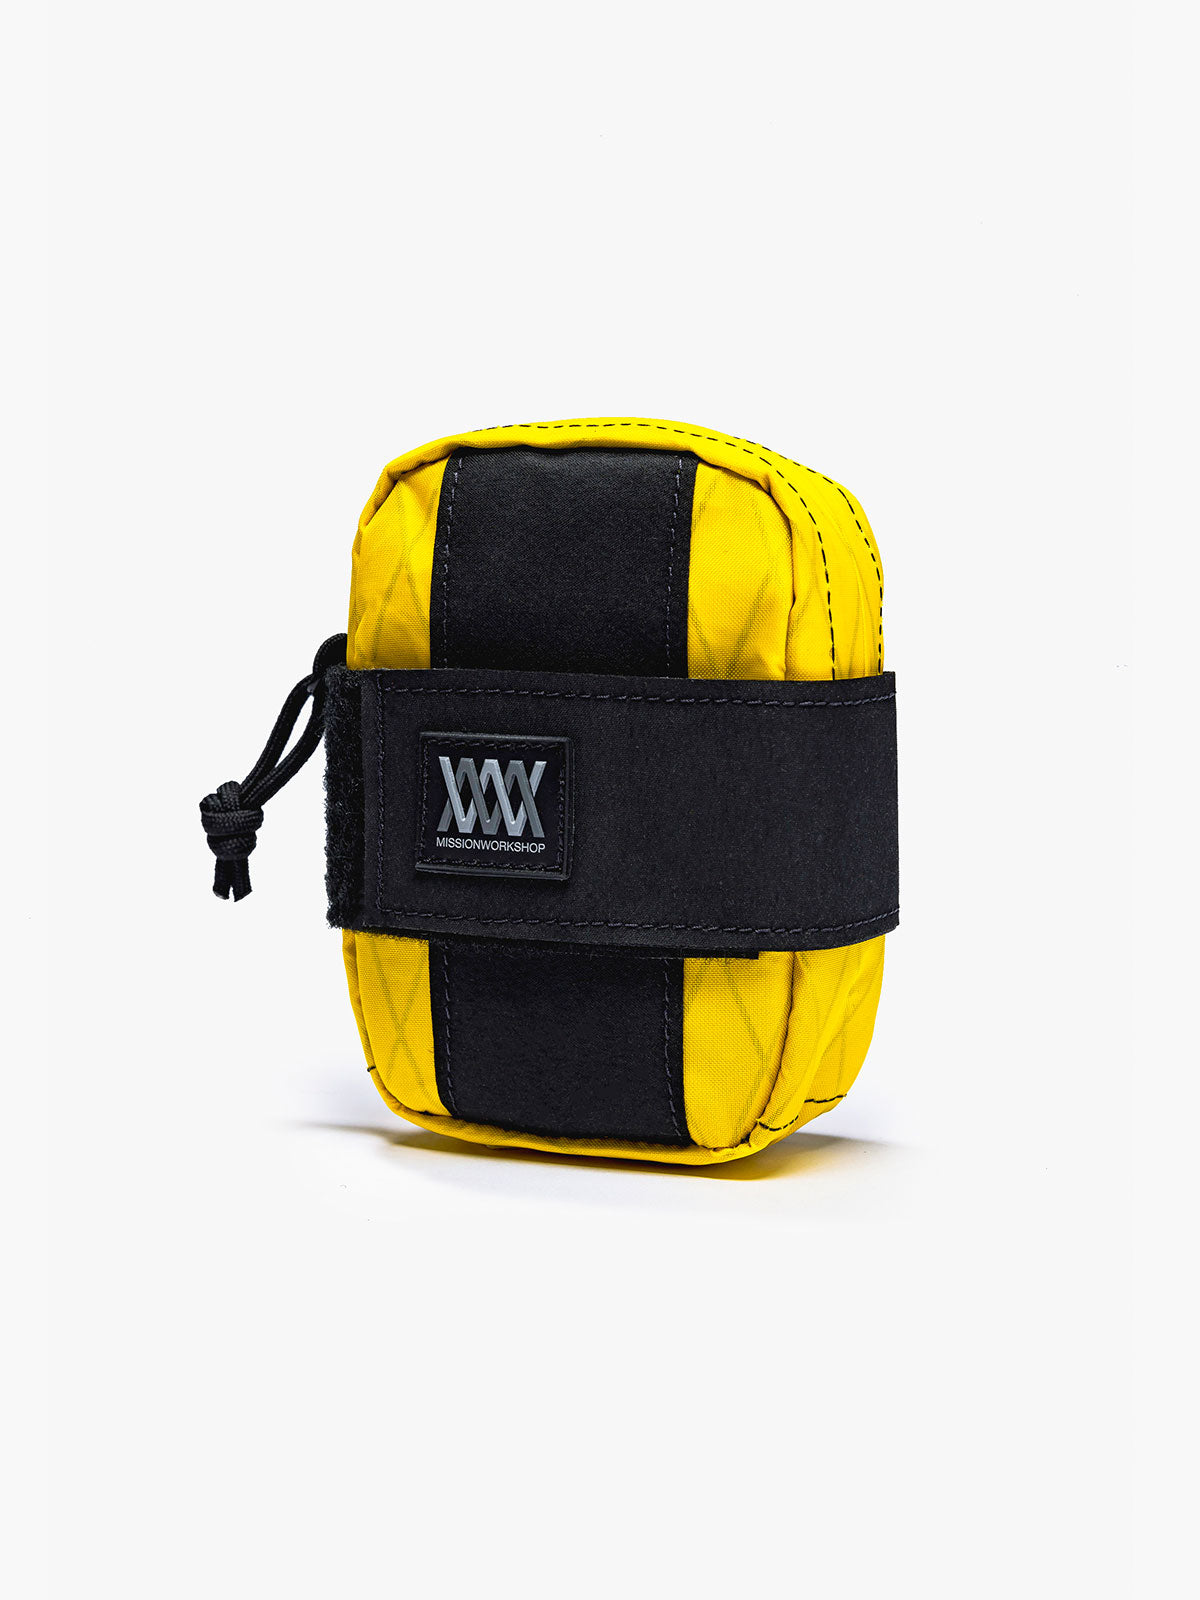 Mission Saddle Bag by Mission Workshop - Weatherproof Bags & Technical Apparel - San Francisco & Los Angeles - Construit pour durer - Garanti pour toujours